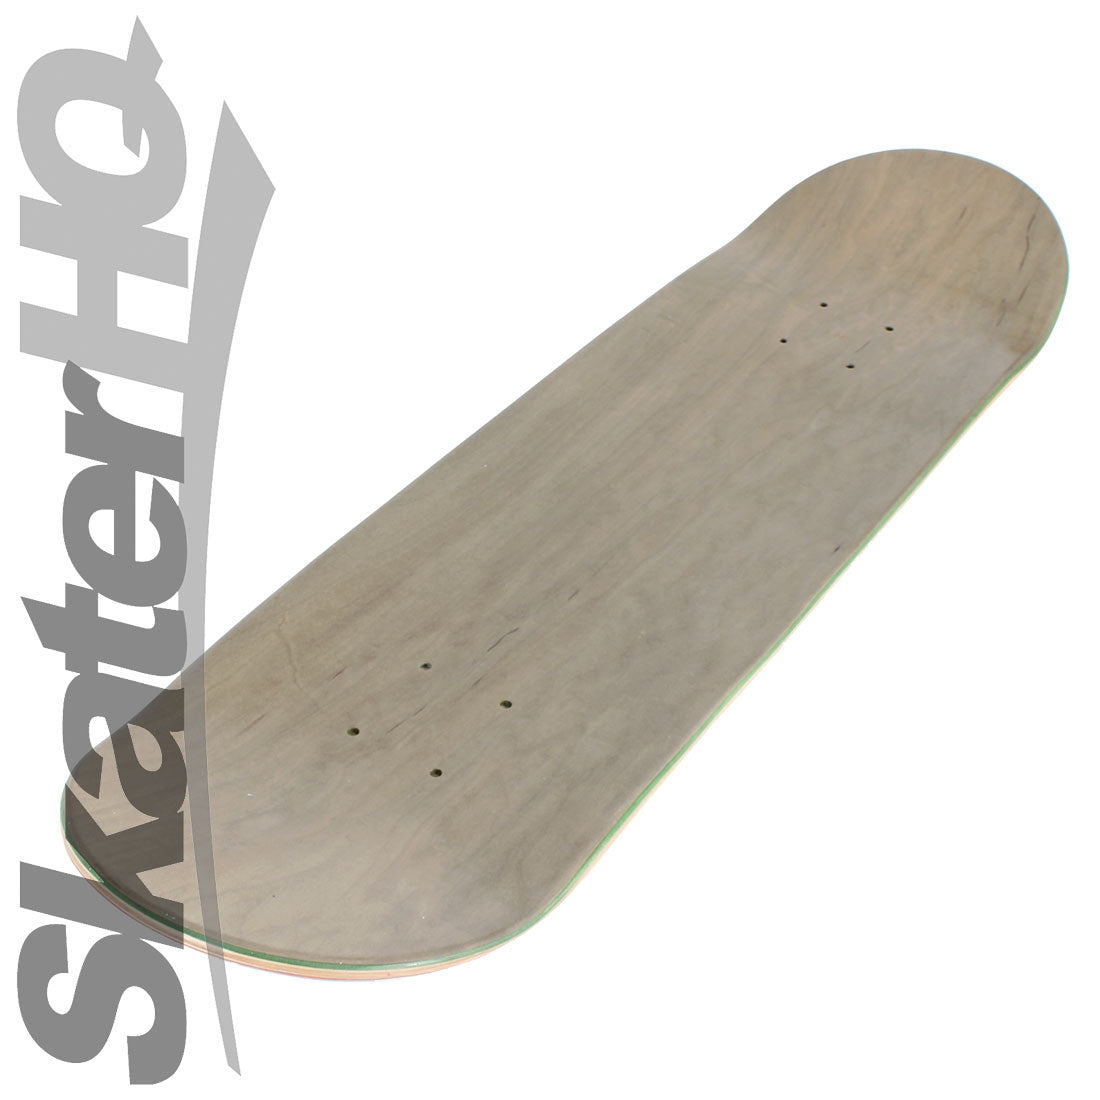 Skater HQ Shredding Time V2 8.25 Deck Skateboard Decks Modern Street